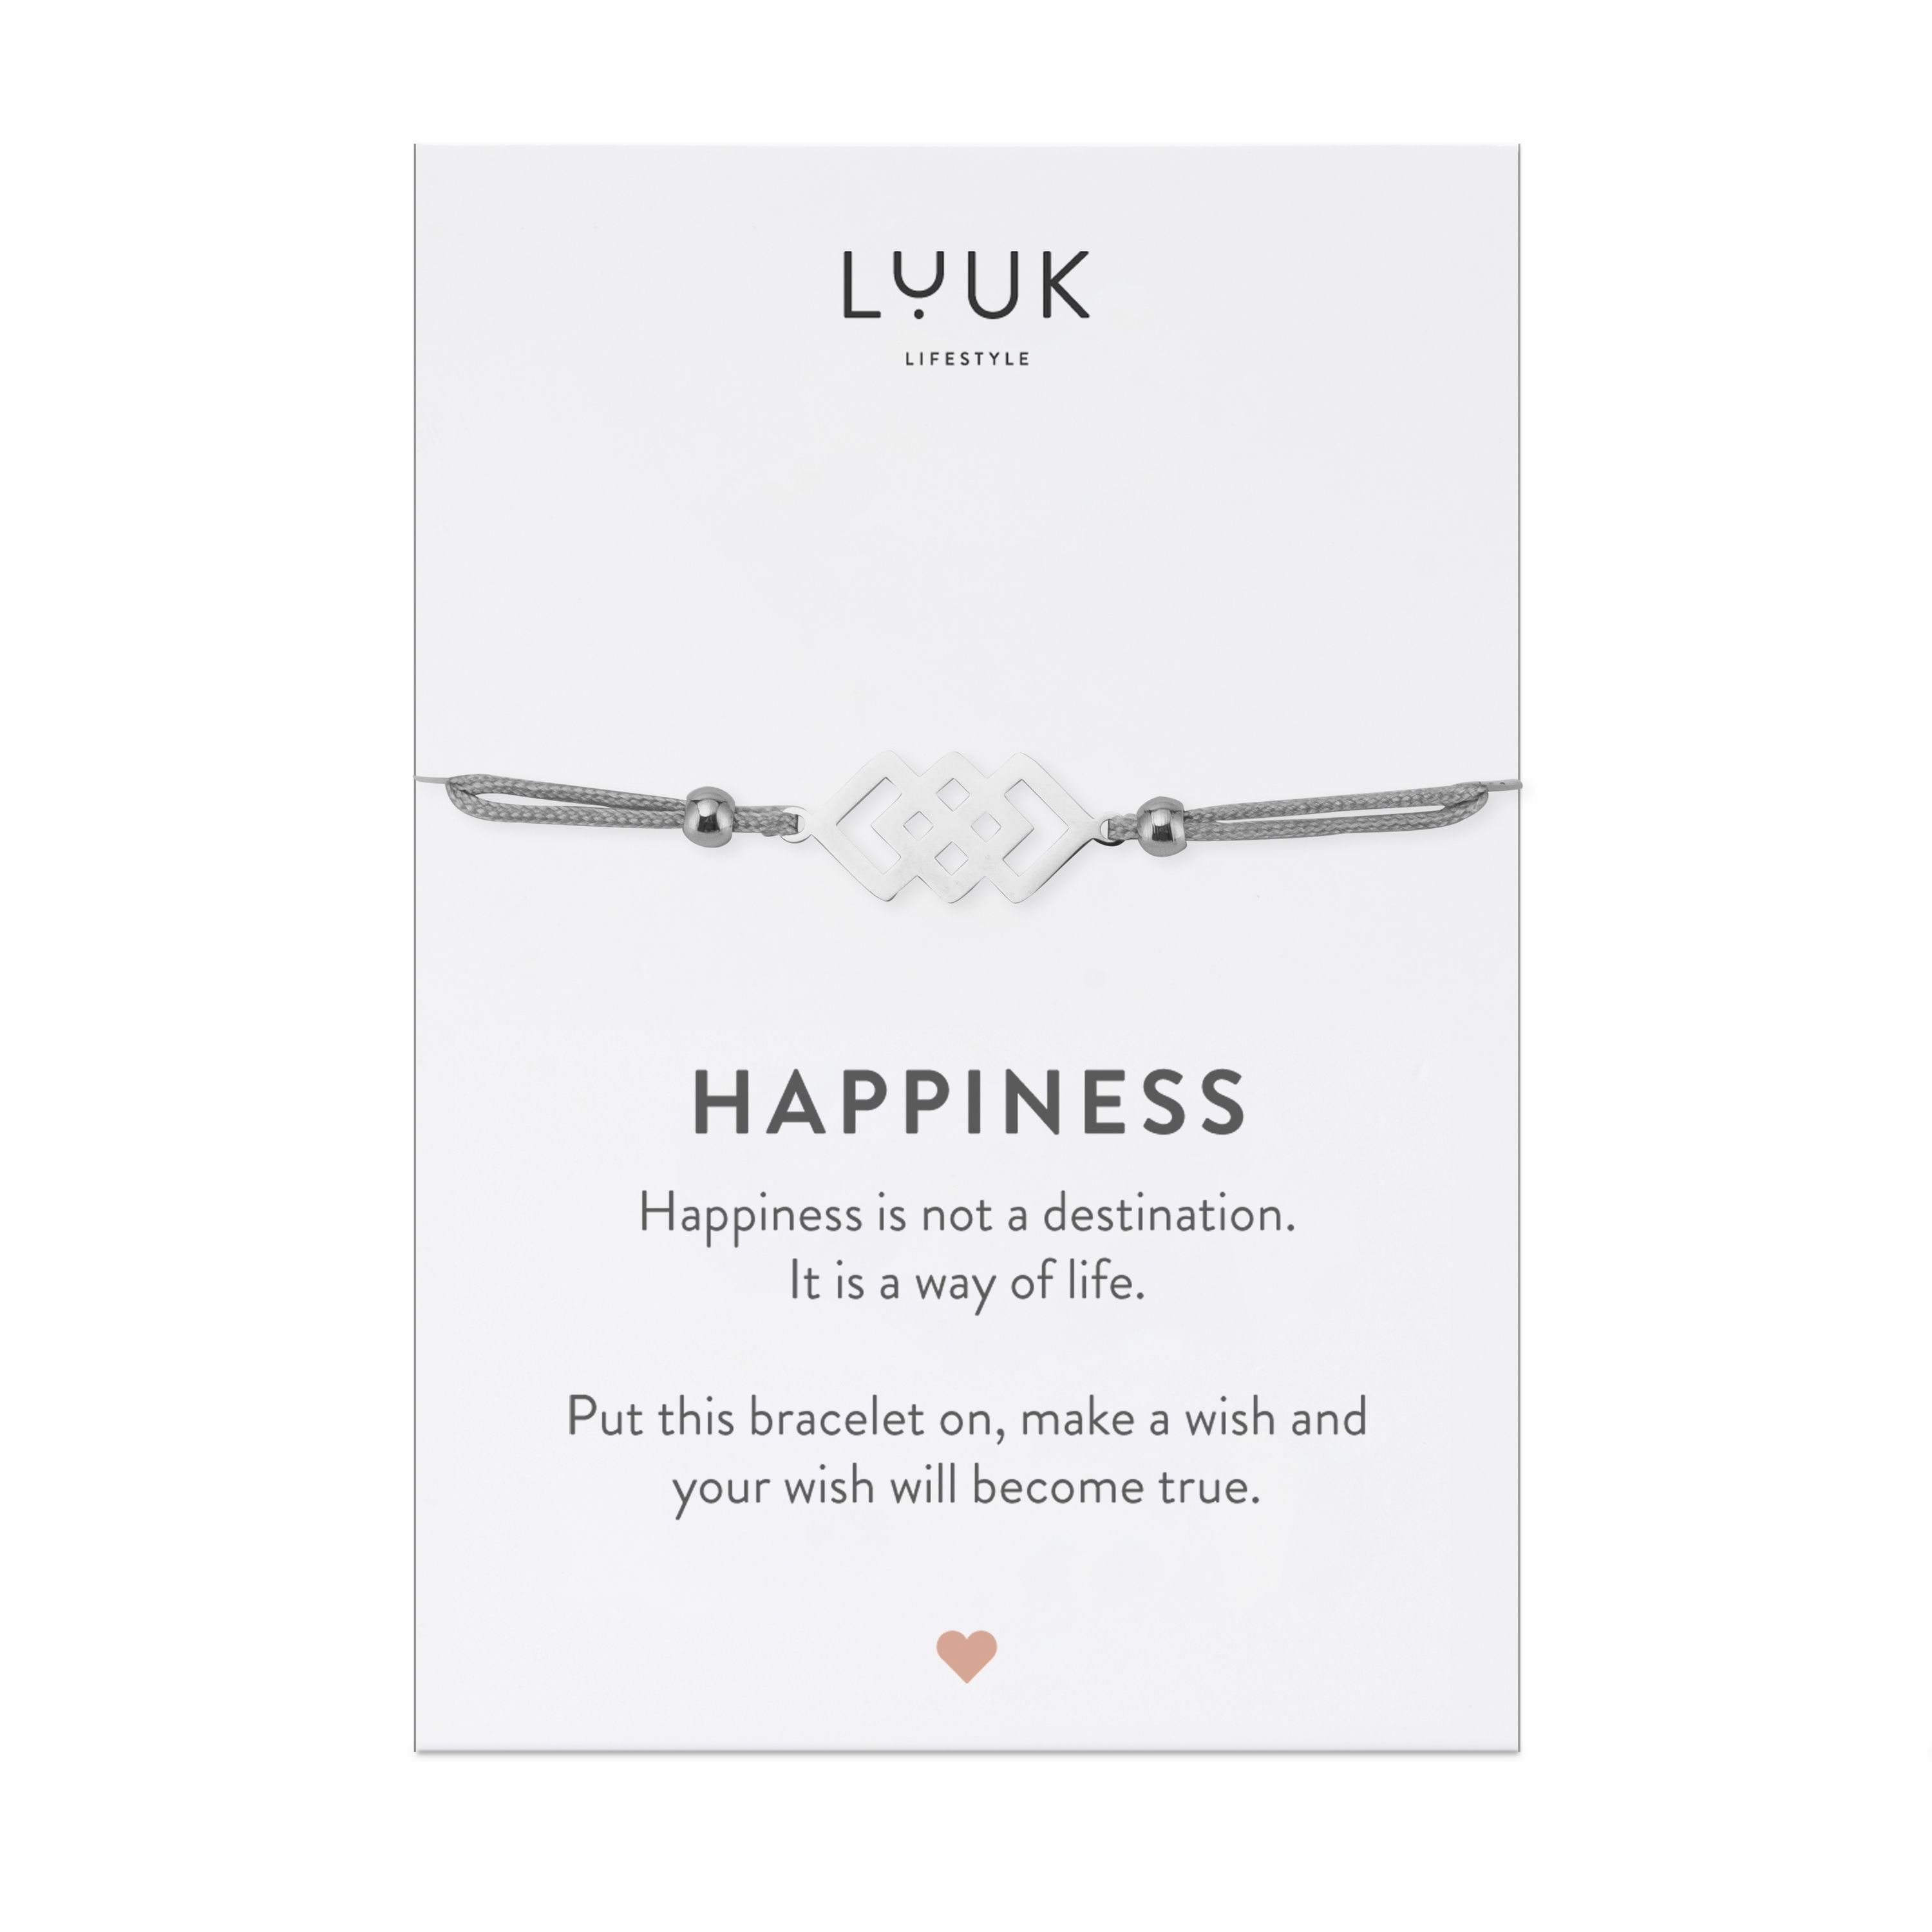 LUUK LIFESTYLE Freundschaftsarmband verschlungene Silber Happiness Quadrate, mit Spruchkarte handmade